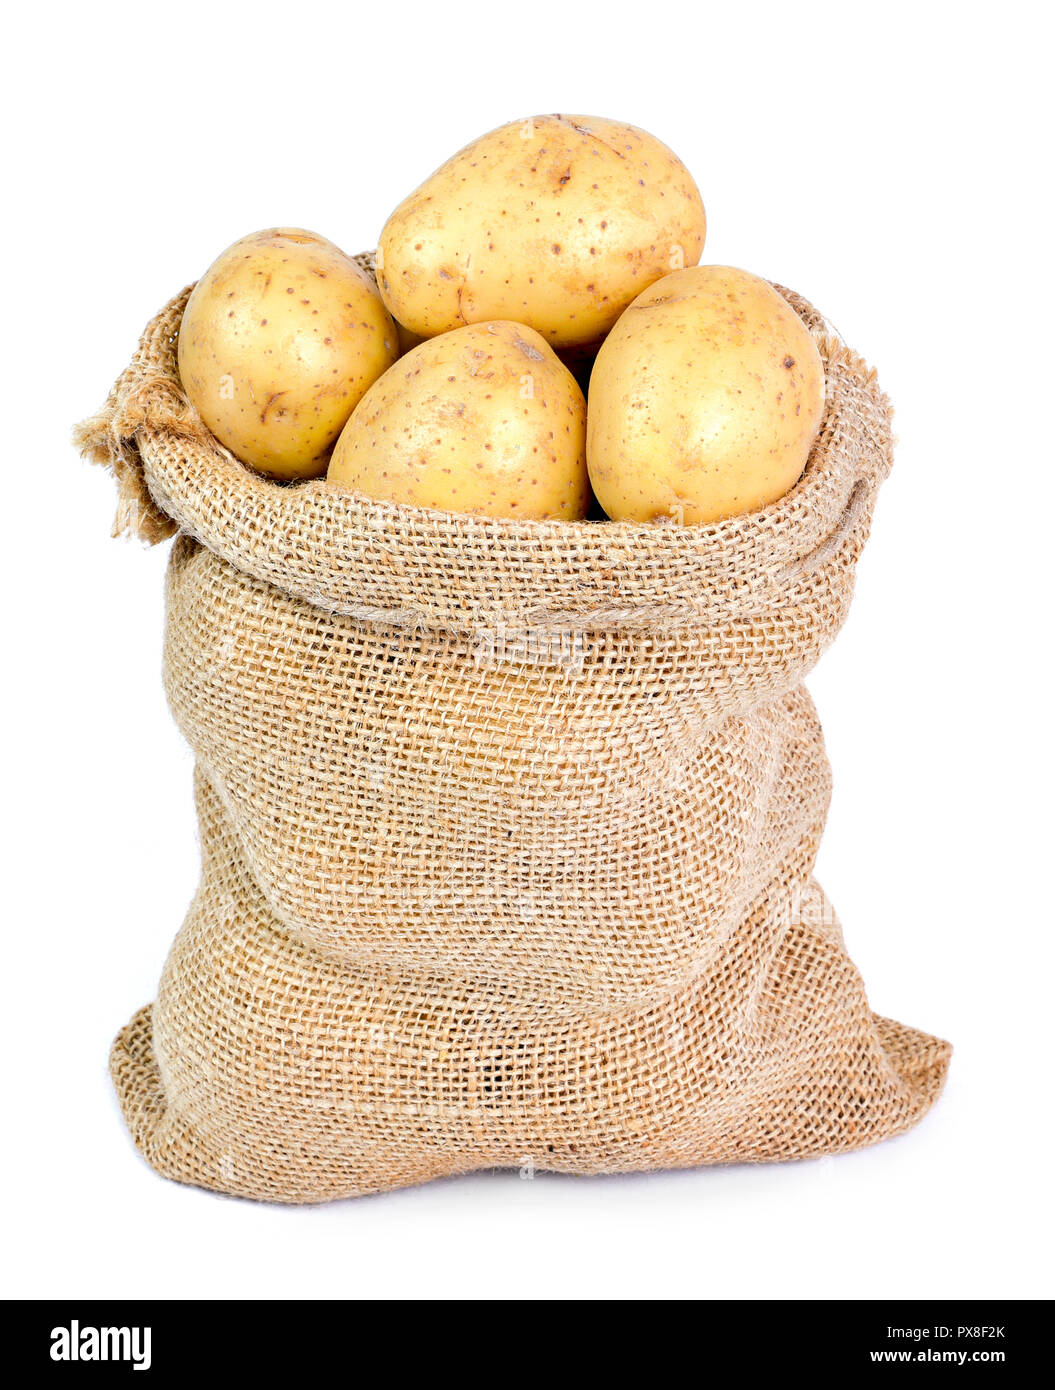 Patata fresca cruda en un saco de arpillera. Escena de patata terrosos con cilicio aislado sobre fondo blanco, ingrediente de cocina. Foto de stock